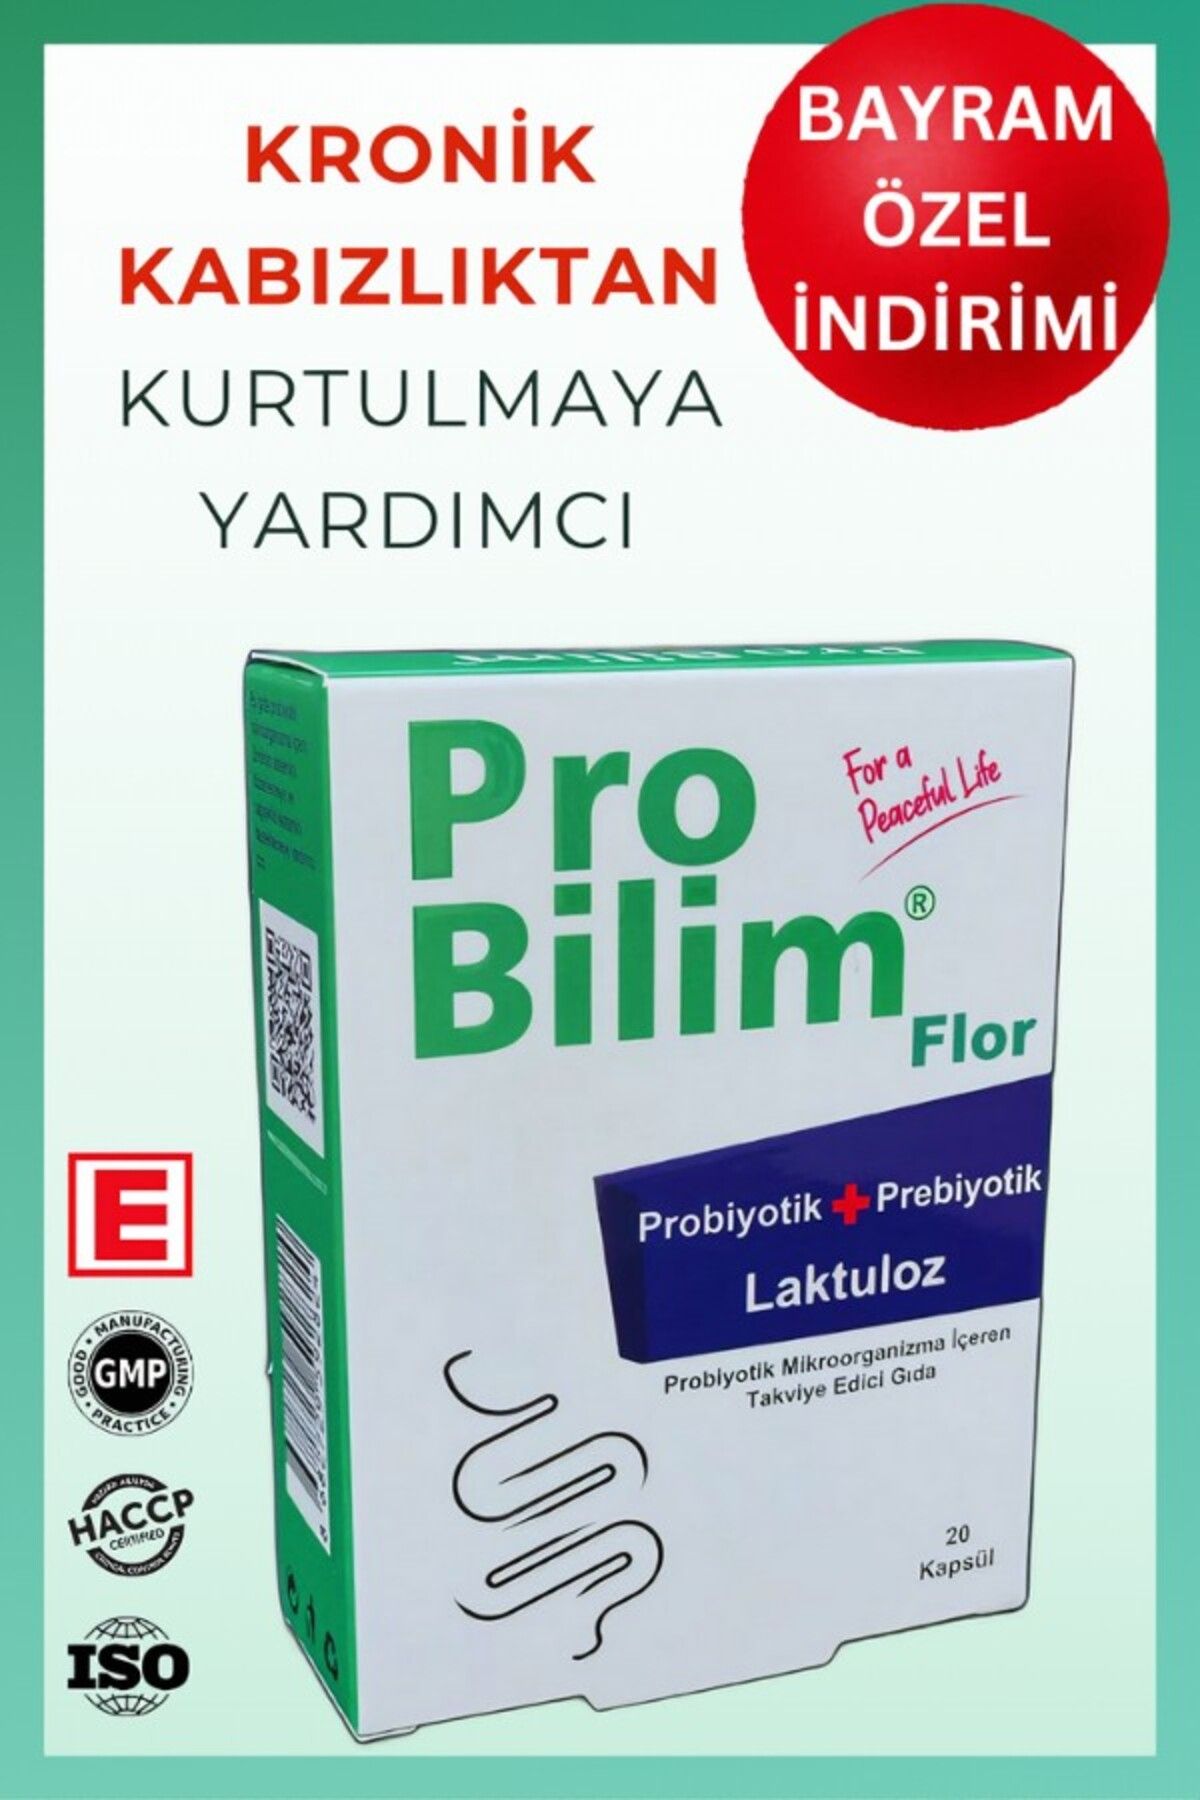 probilim ® Flor Probiyotik Kapsül , Prebiyotik , Laktuloz,